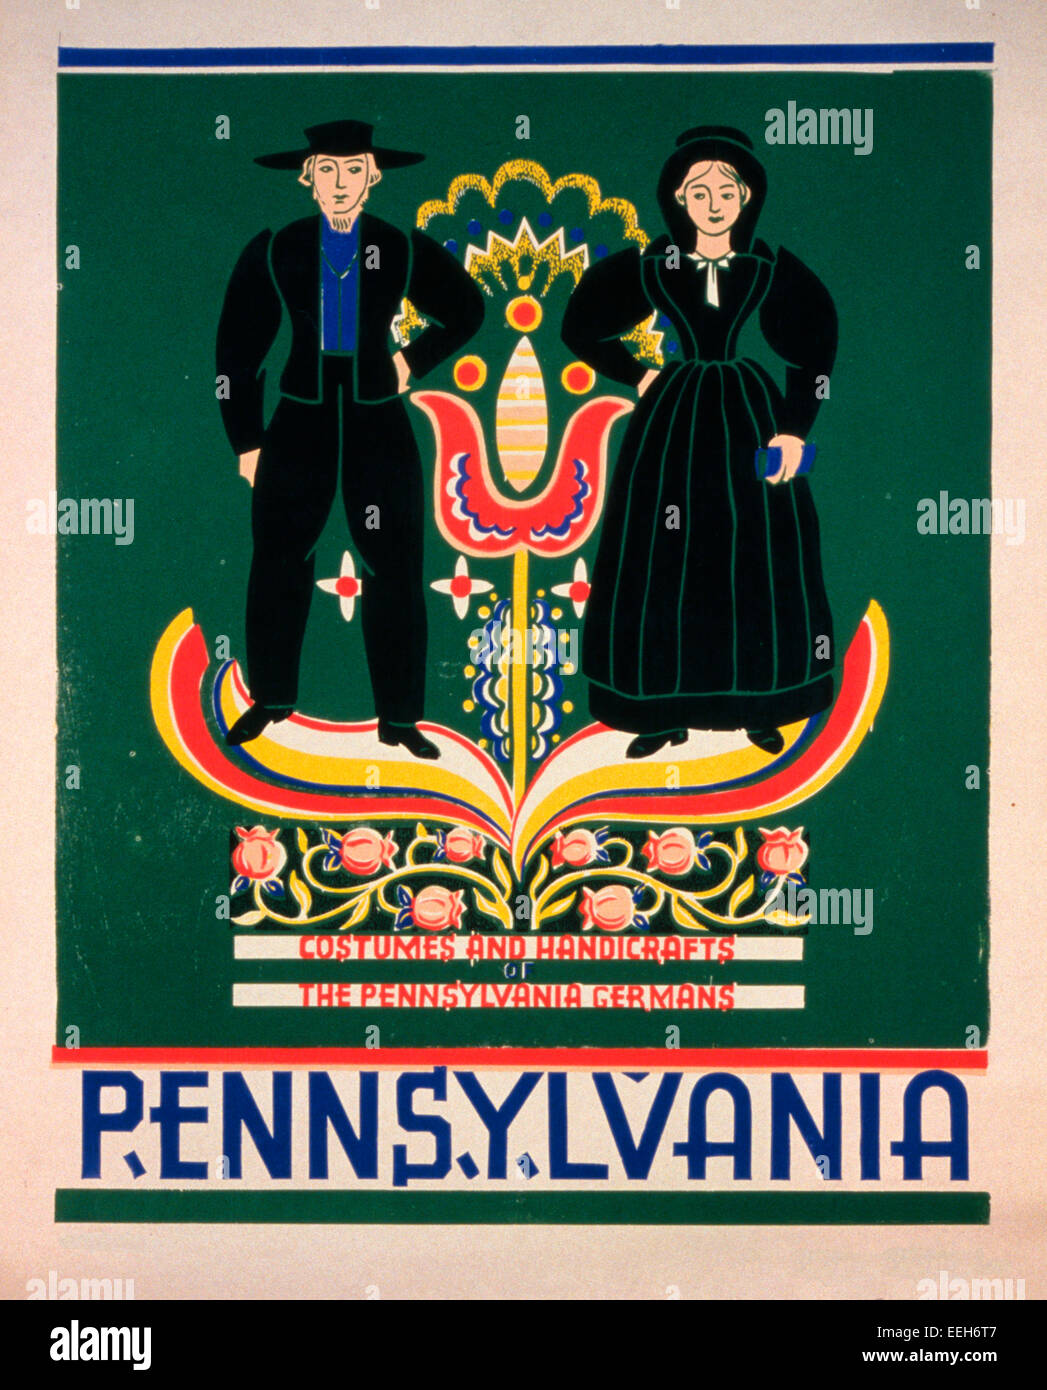 Pennsylvania Kostüme und Handarbeiten, die Pennsylvania-deutschen - Poster, die Förderung von Lancaster County, Pennsylvania, zeigt ein amisches paar, ca. 1940 Stockfoto